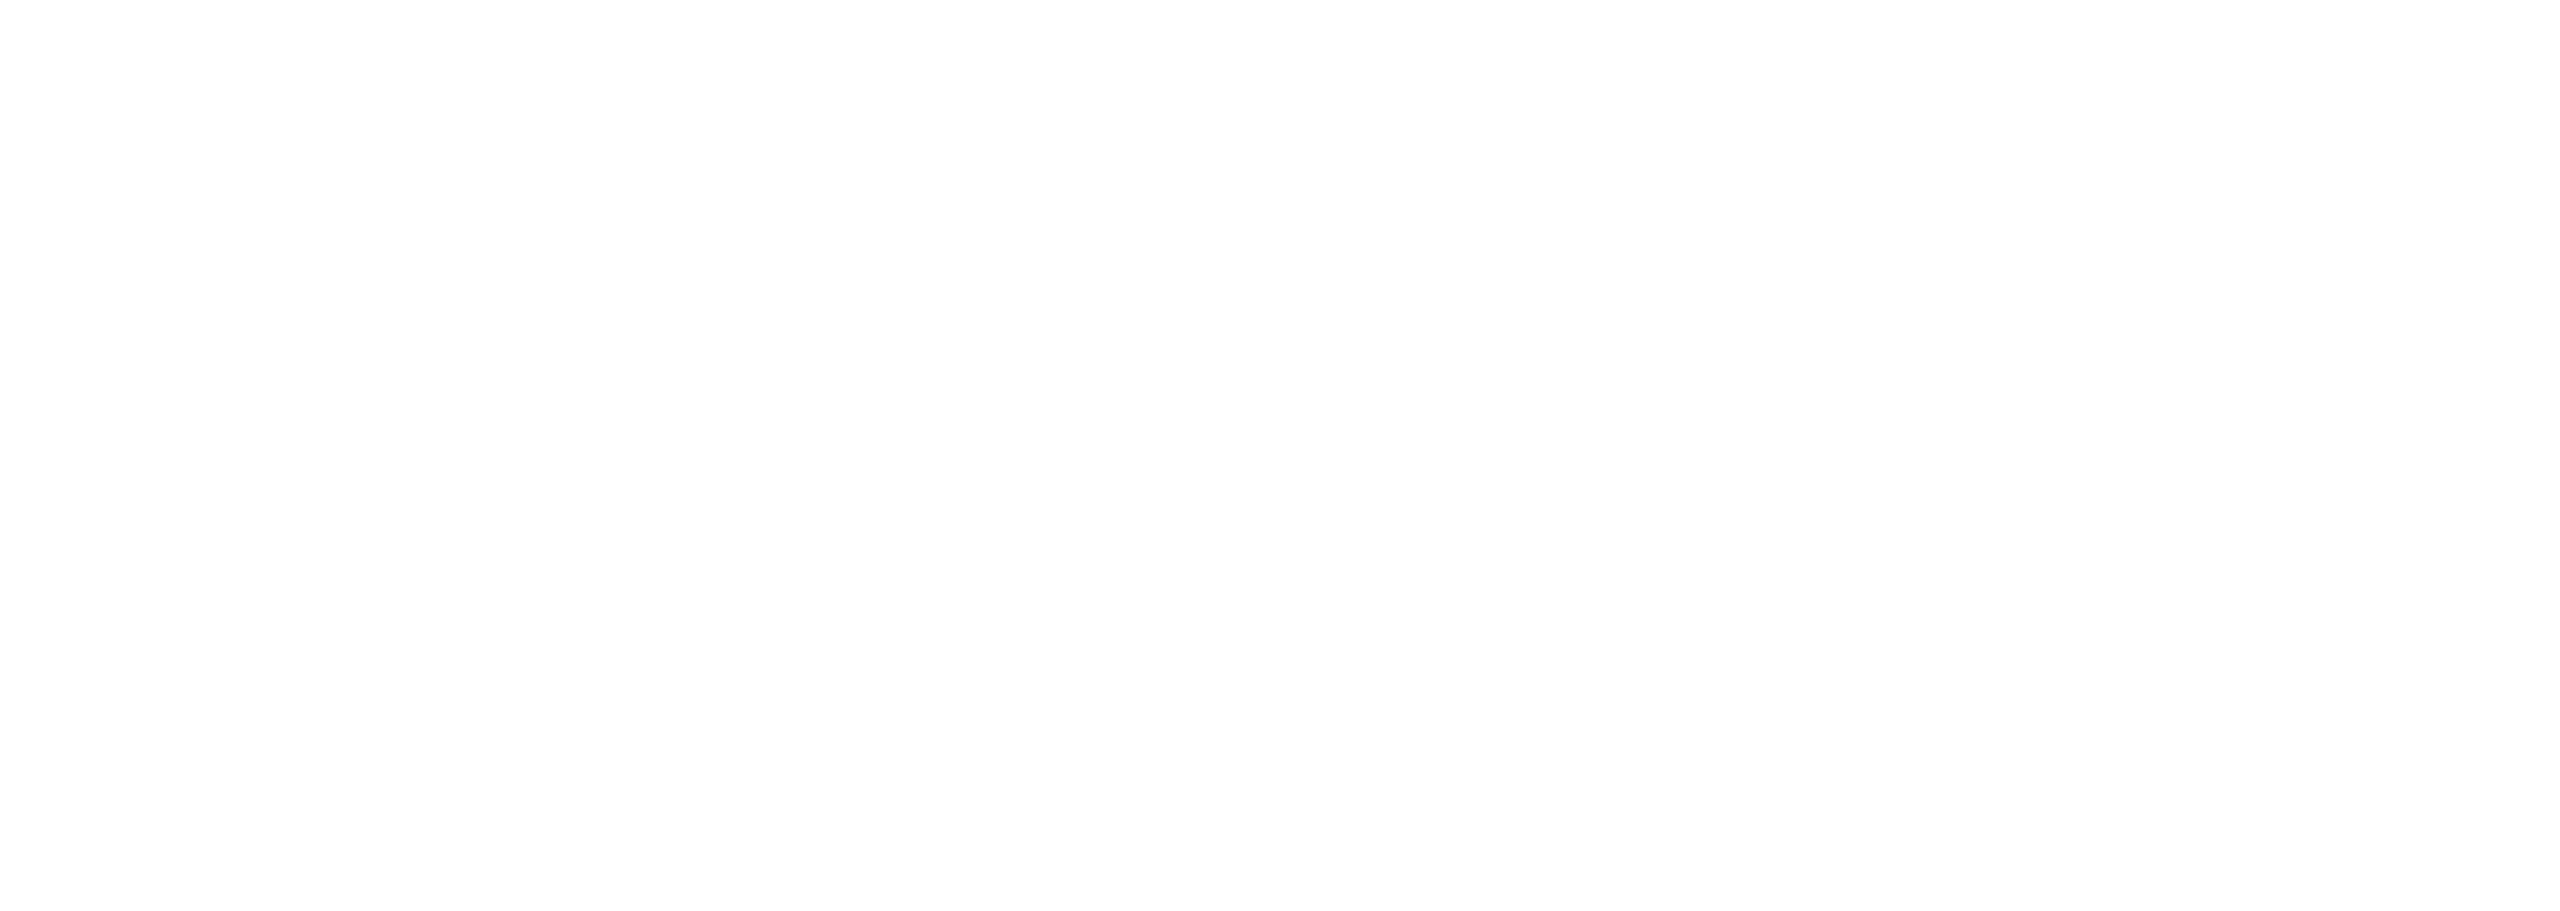 logo_Optic_2000_white (1)